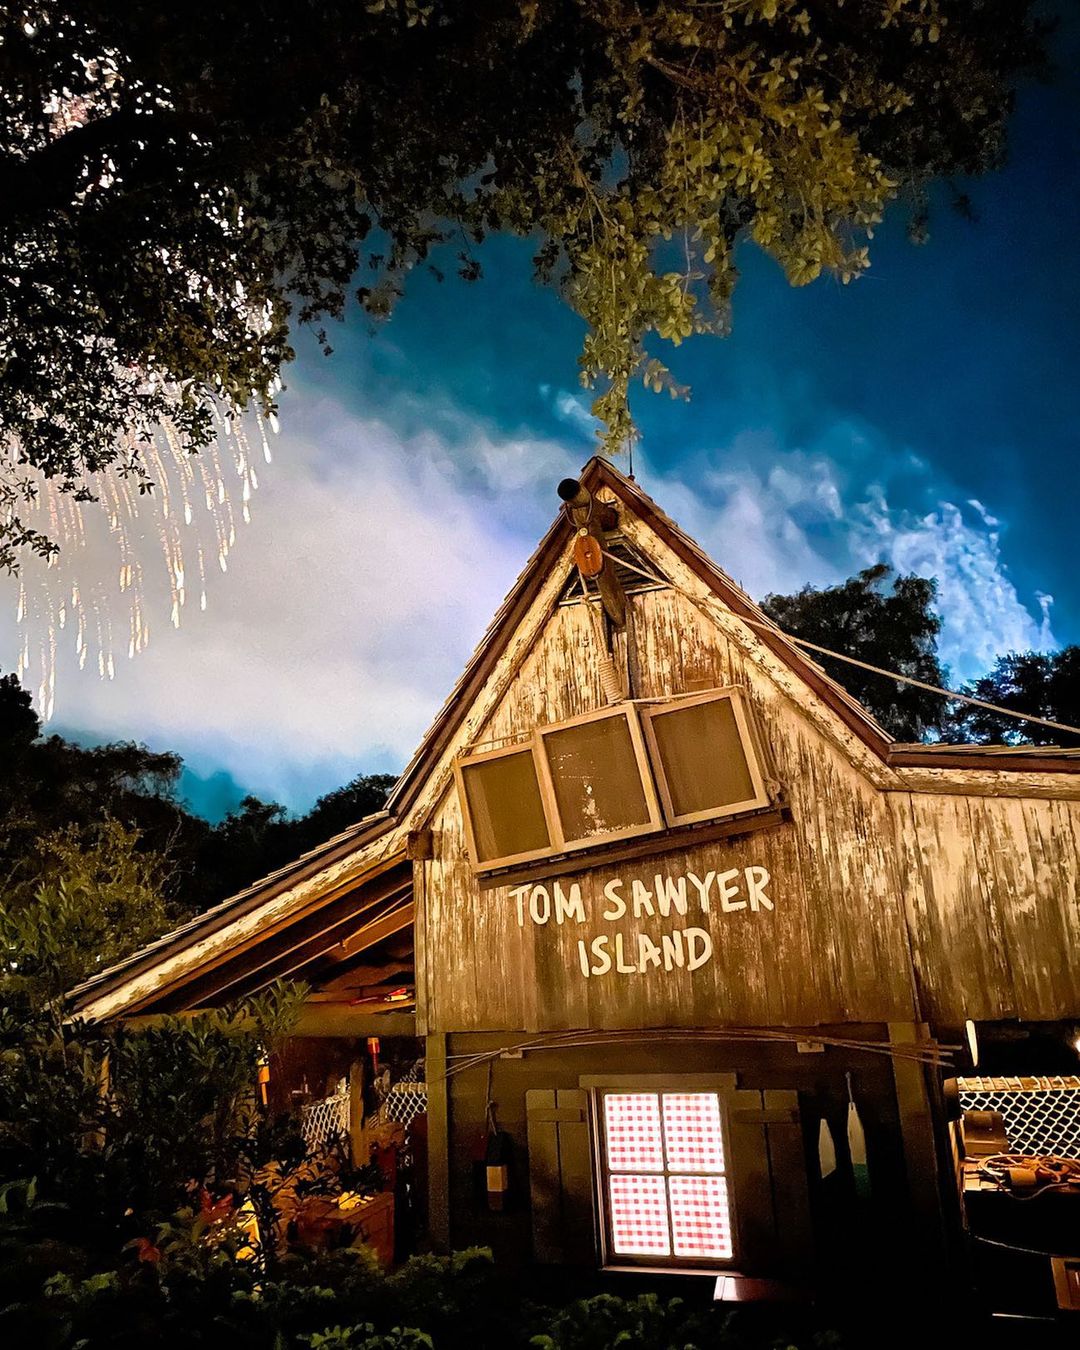 L'île Tom Sawyer au royaume magique de Disney